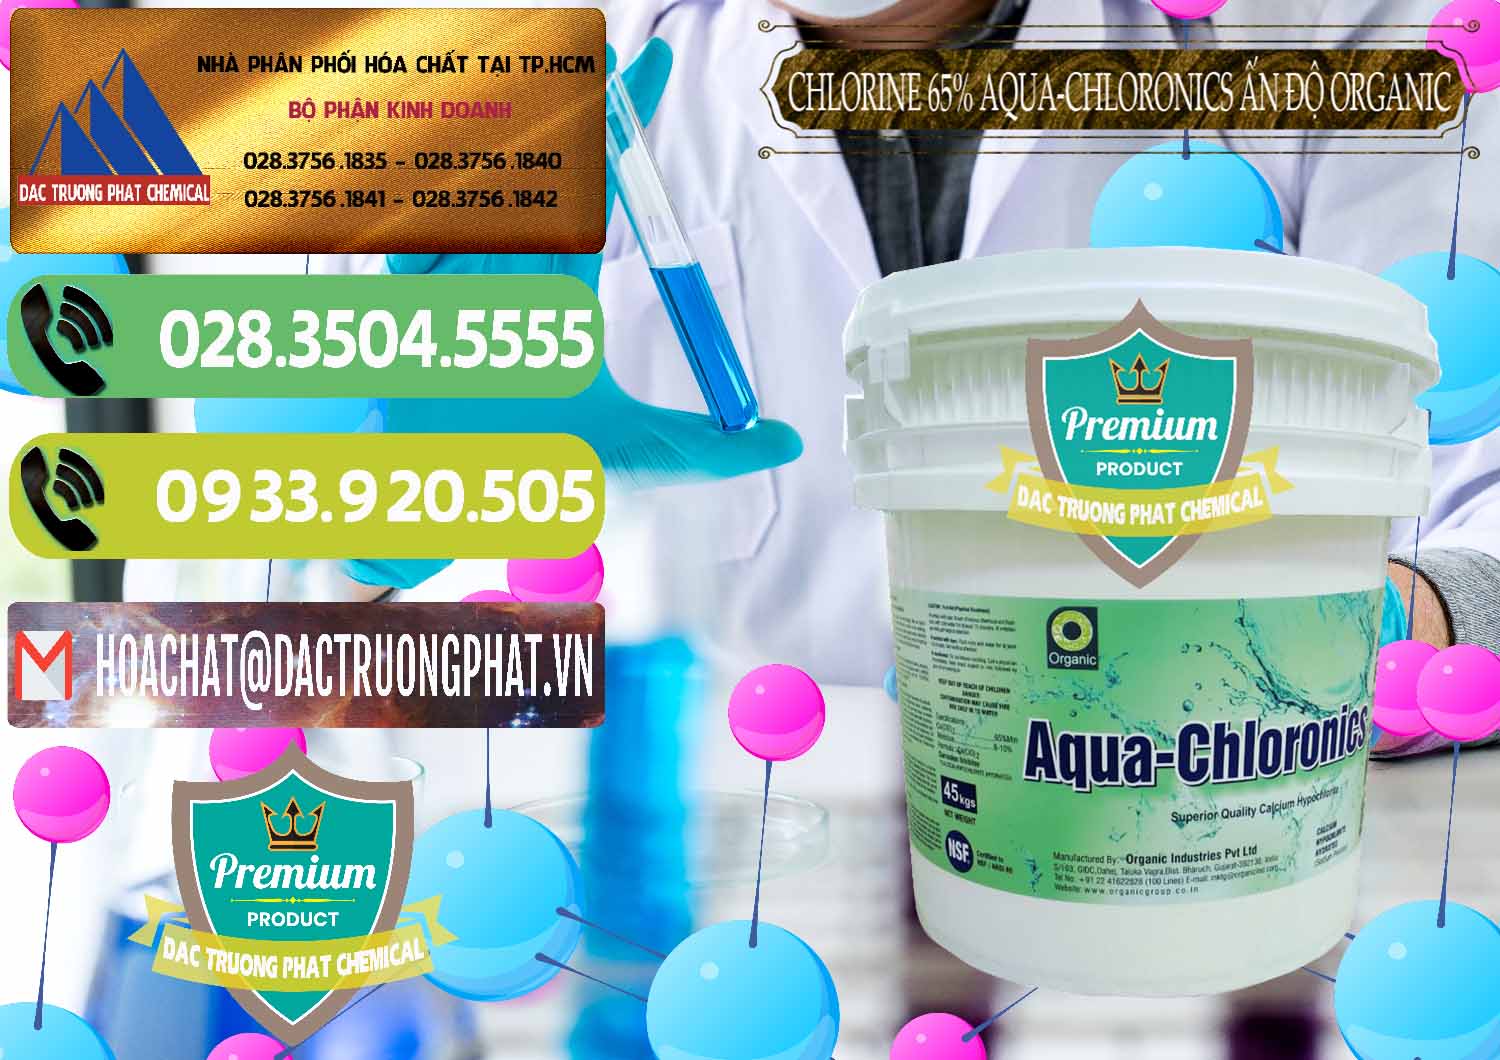 Cty chuyên bán ( cung cấp ) Chlorine – Clorin 65% Aqua-Chloronics Ấn Độ Organic India - 0210 - Bán - cung cấp hóa chất tại TP.HCM - hoachatmientay.vn